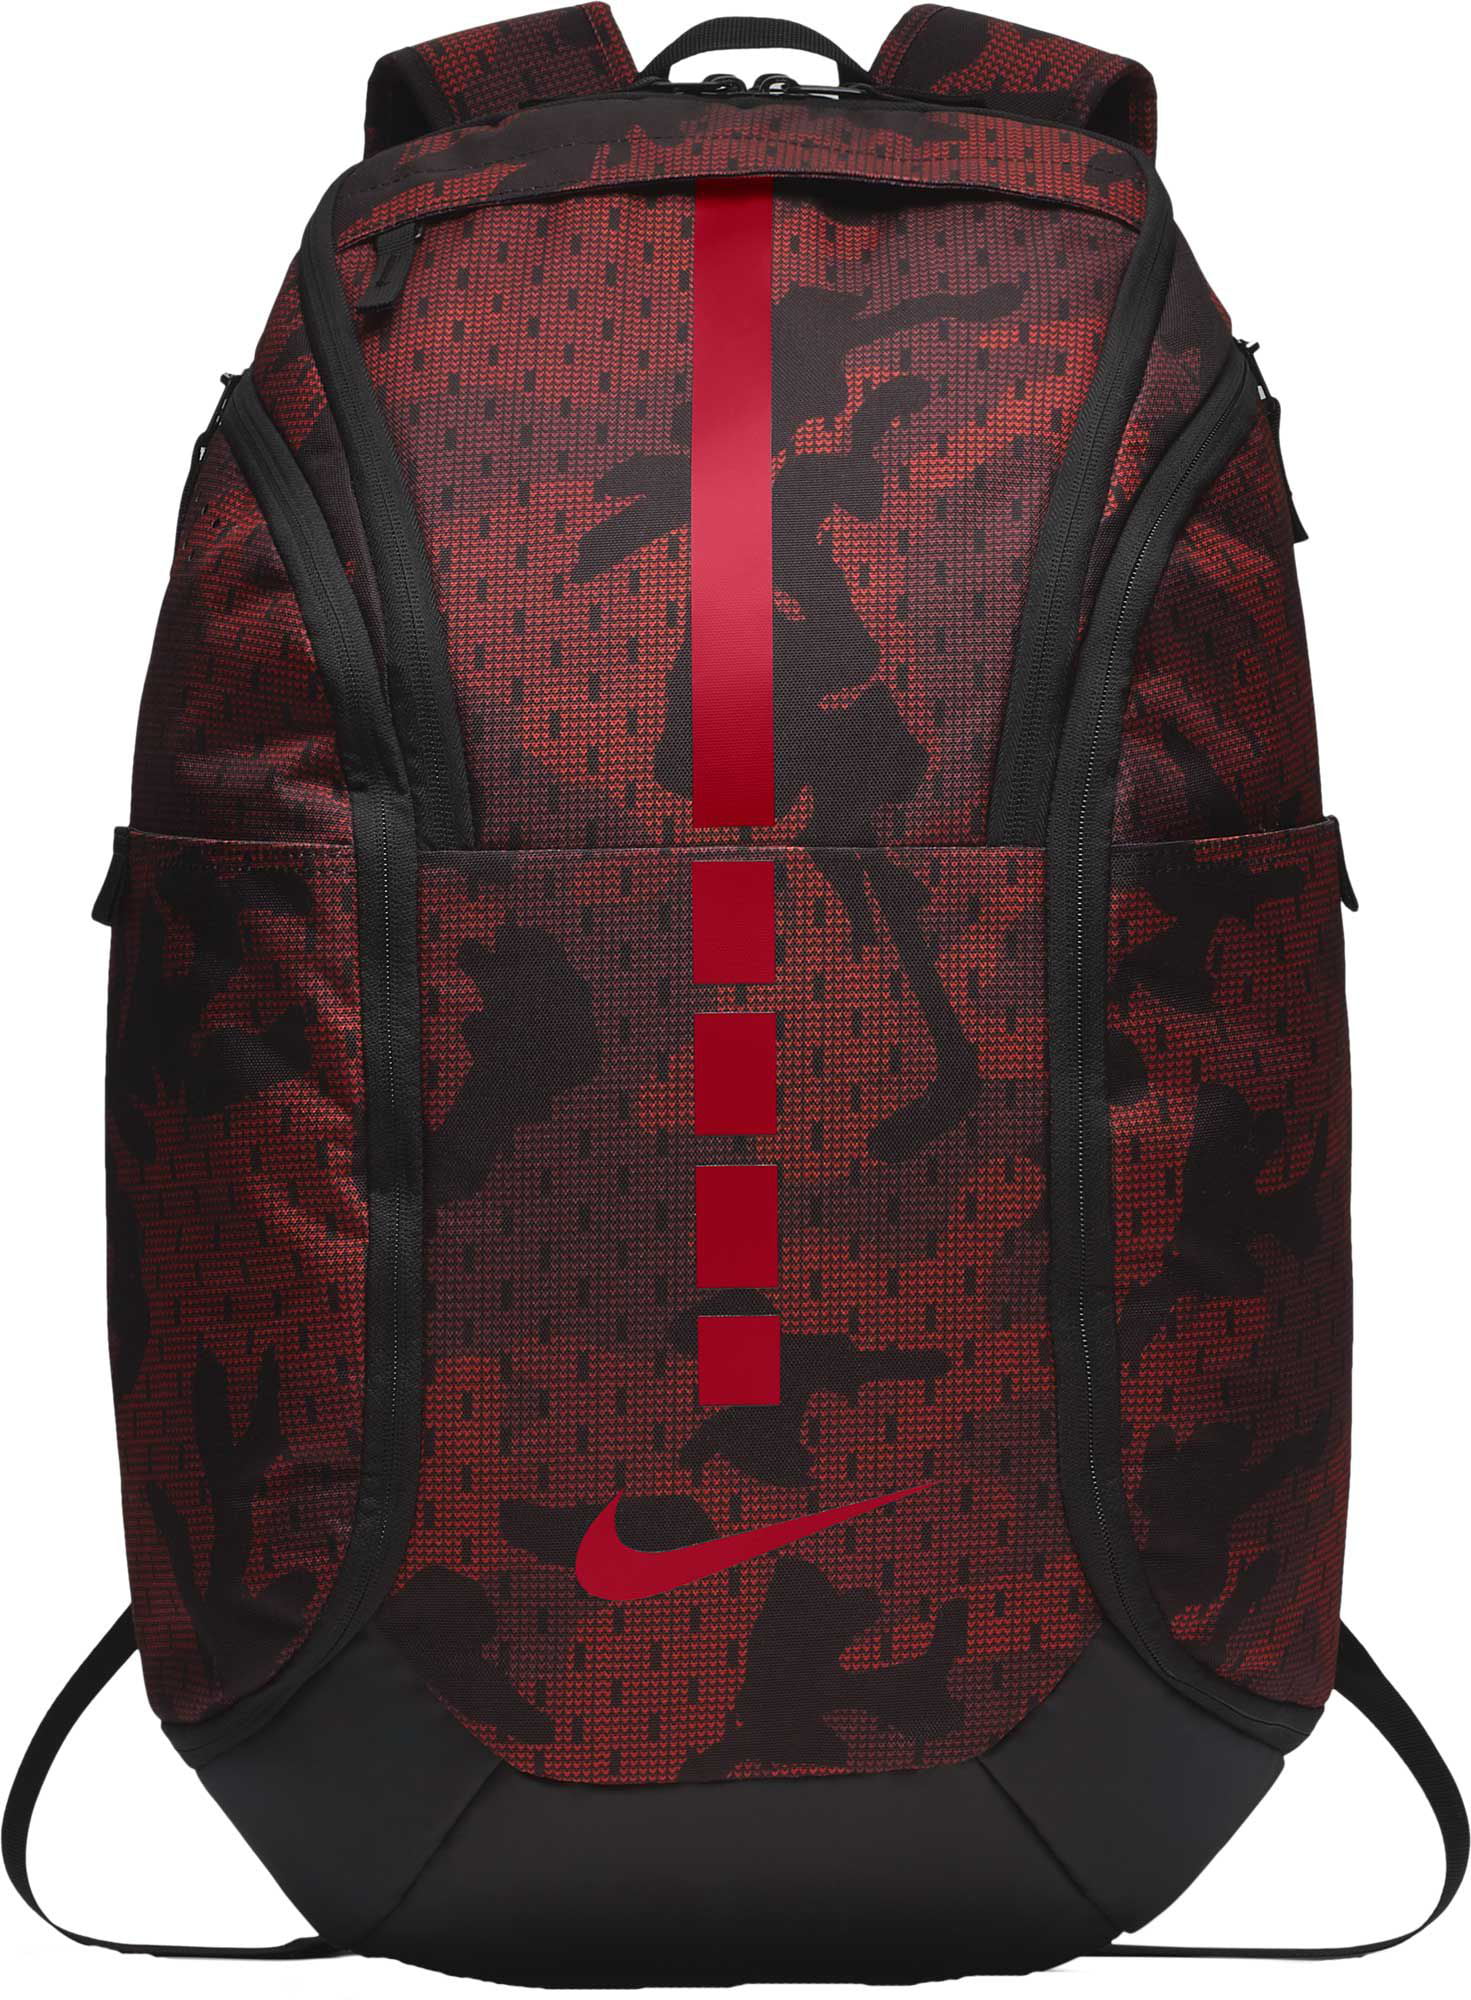 nike hoops elite backpack red